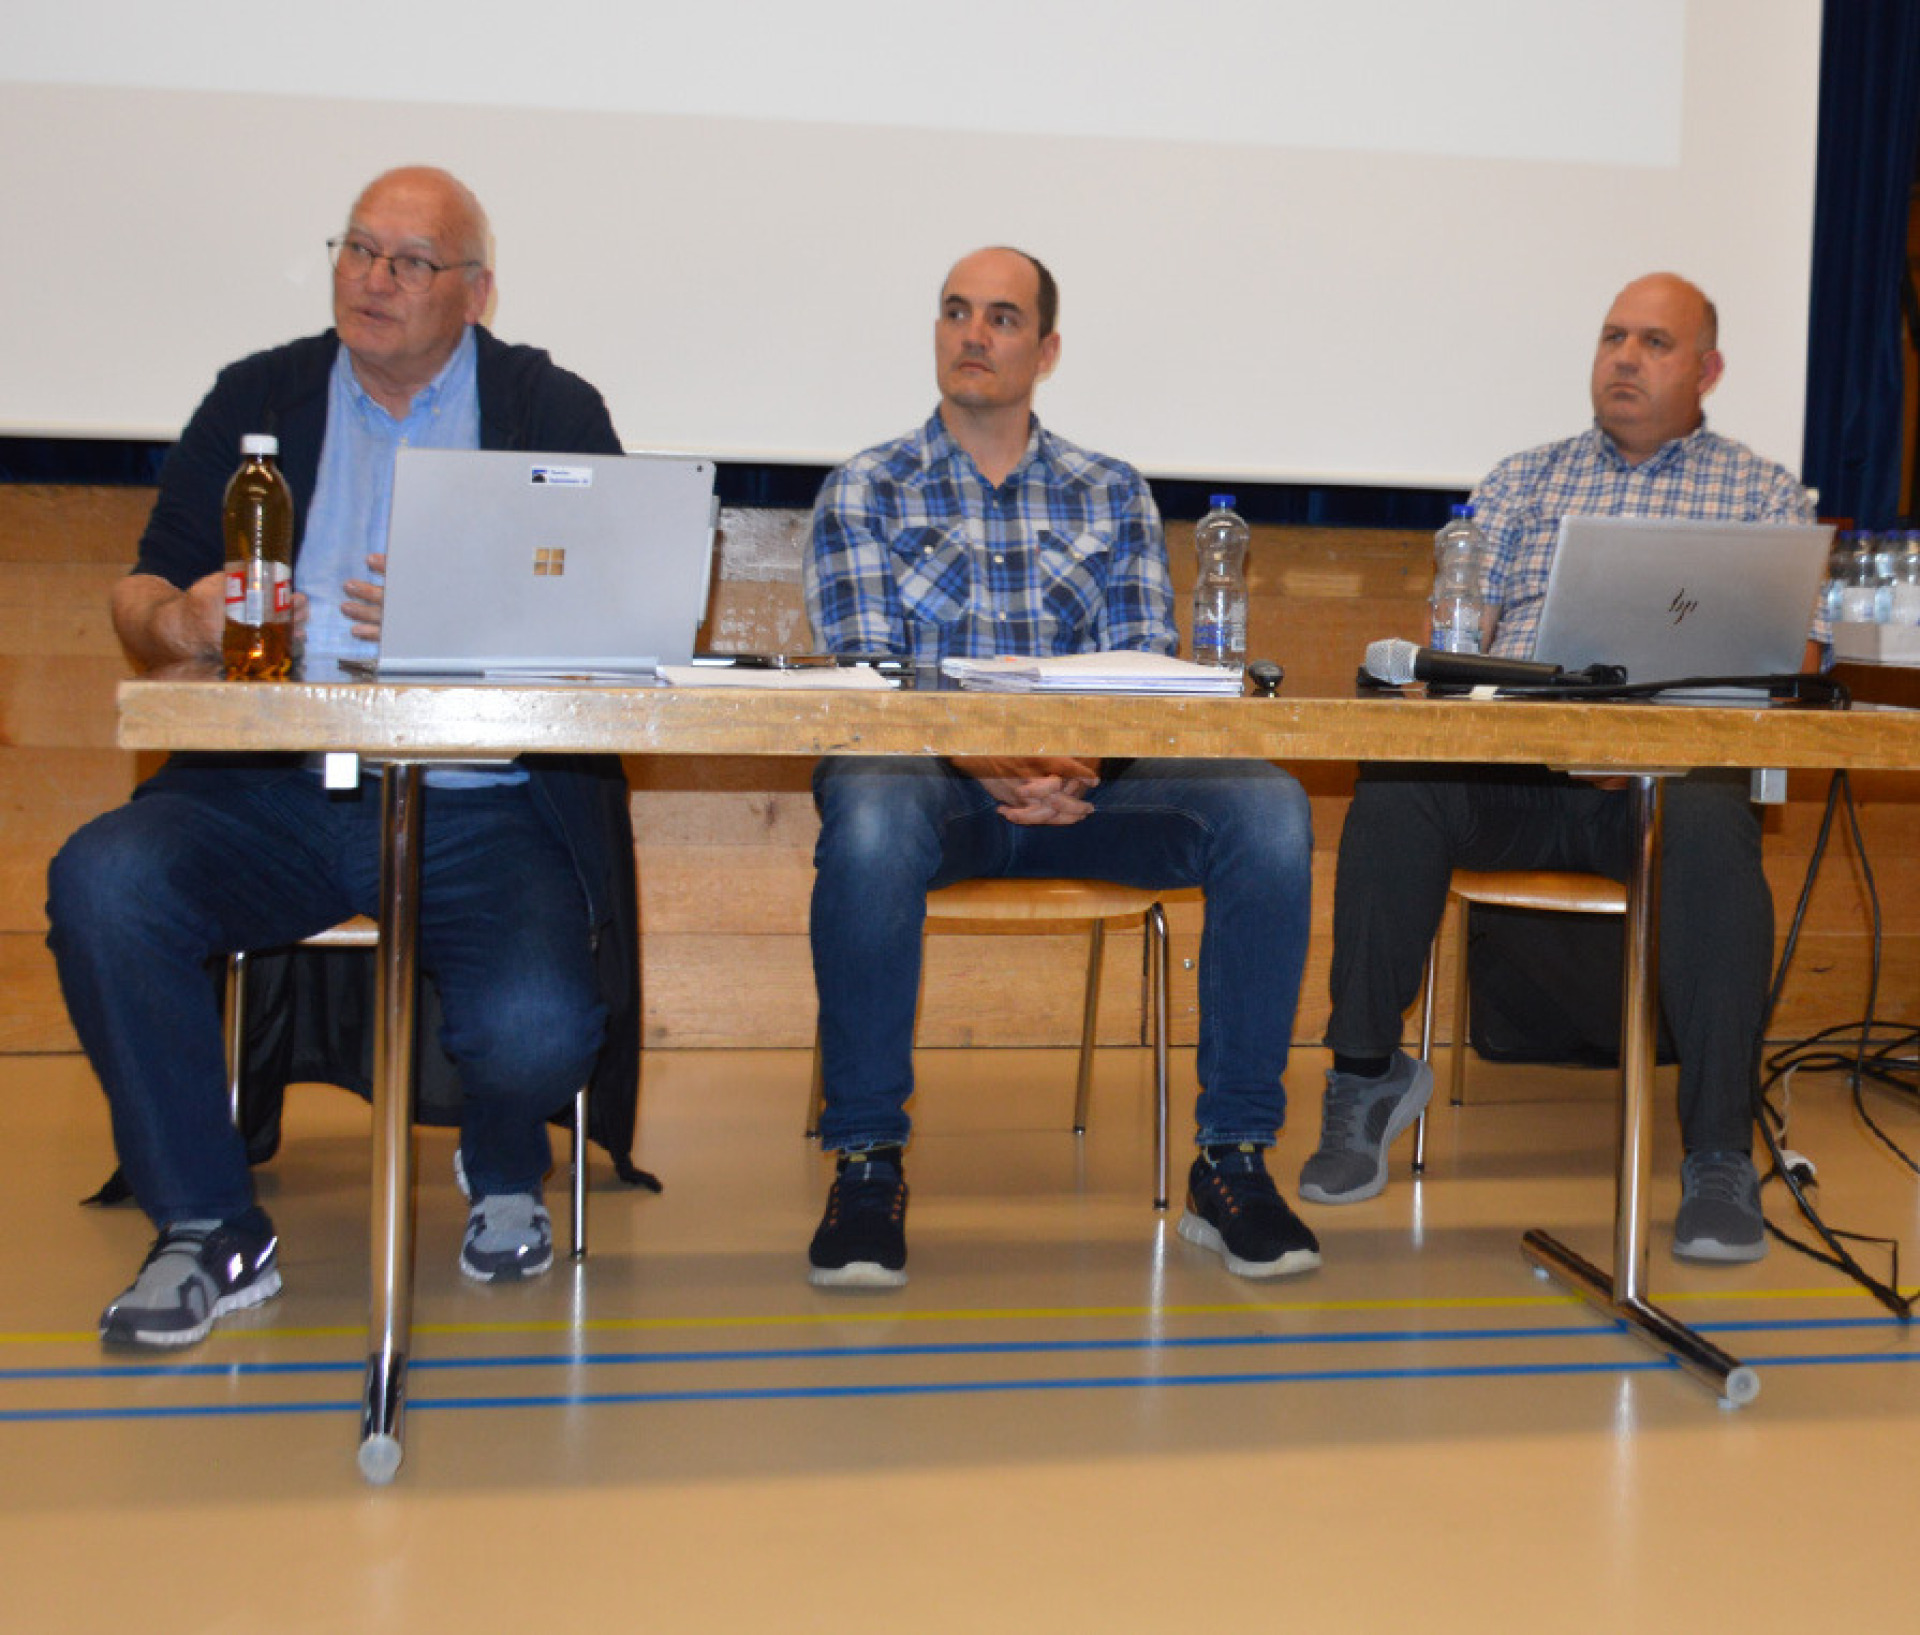 Ingenieur Thomas Gruber sowie Silvio Zingg und Patrick Manz von der BKW (von links) standen den Interessierten Rede und Antwort.